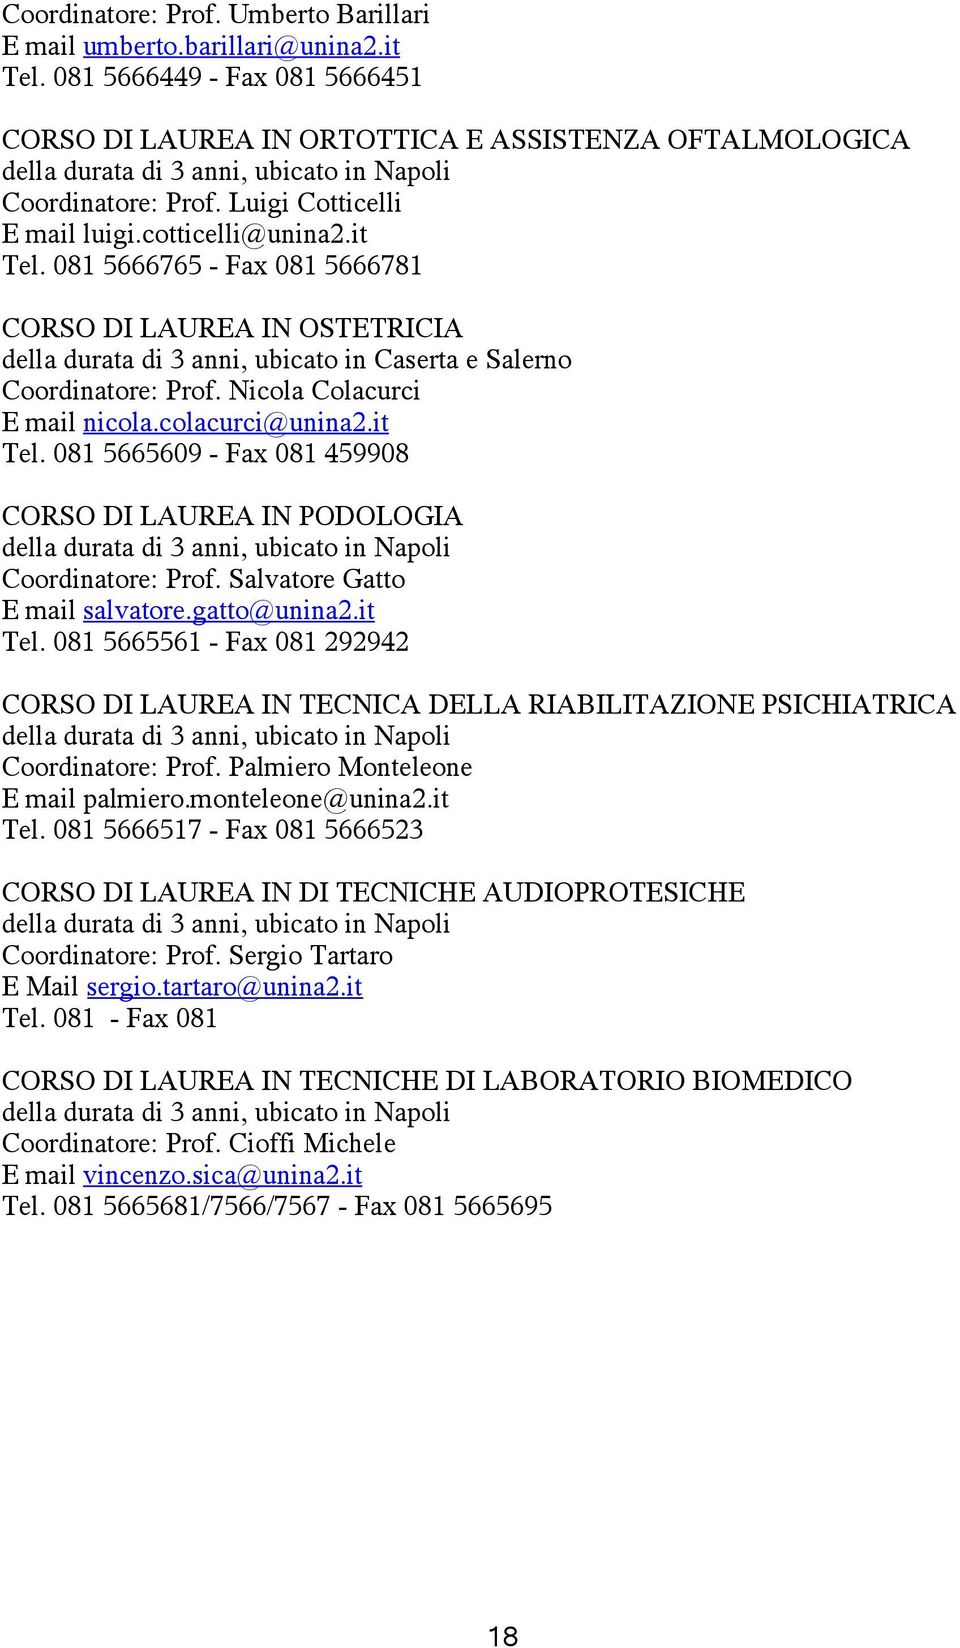 it Tel. 081 5666765 - Fax 081 5666781 CORSO DI LAUREA IN OSTETRICIA della durata di 3 anni, ubicato in Caserta e Salerno Coordinatore: Prof. Nicola Colacurci E mail nicola.colacurci@unina2.it Tel. 081 5665609 - Fax 081 459908 CORSO DI LAUREA IN PODOLOGIA della durata di 3 anni, ubicato in Napoli Coordinatore: Prof.